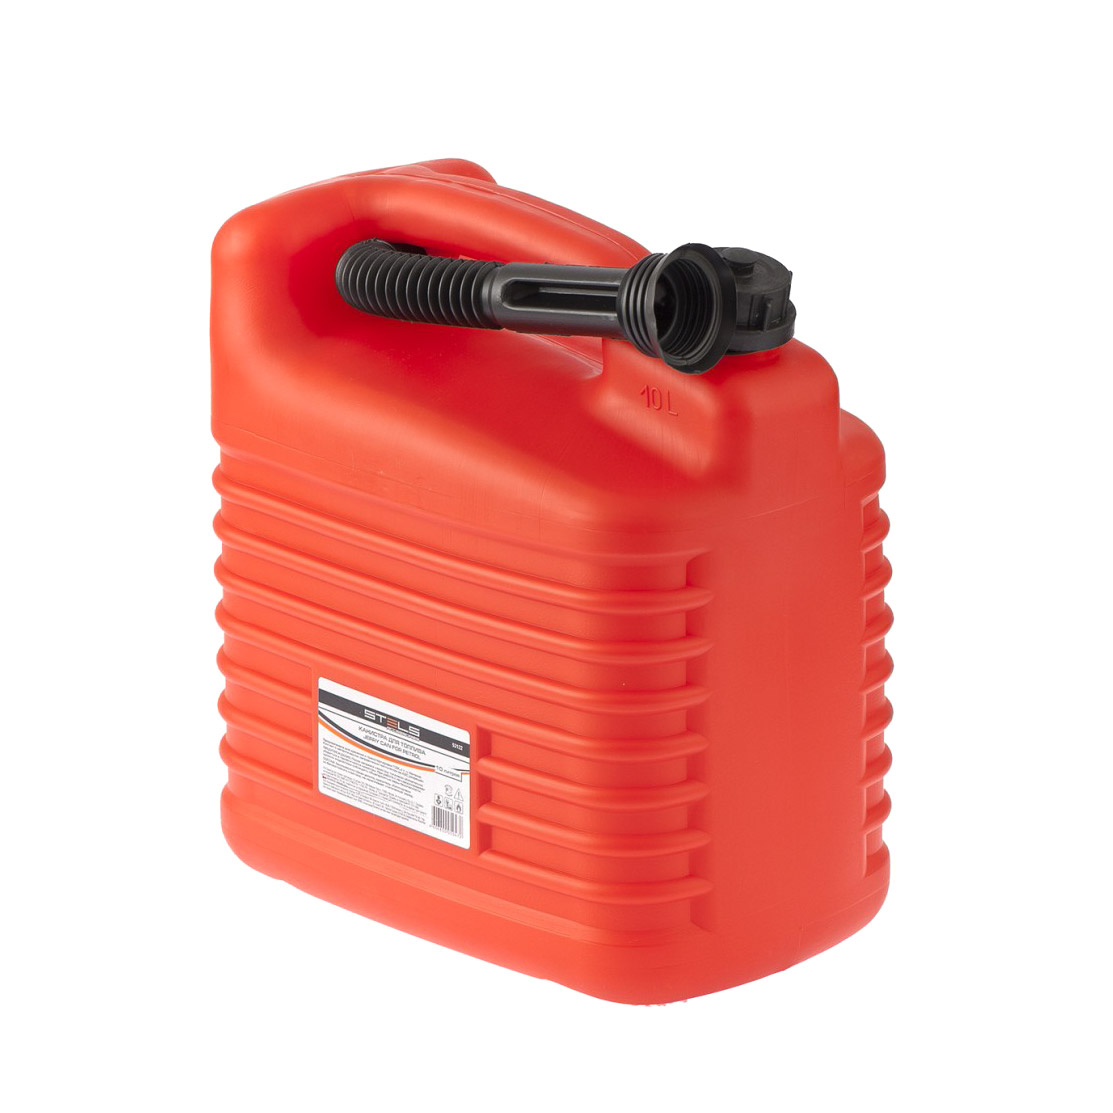 Канистра для топлива Stels пластиковая 10 литров, цвет красный - фото 2